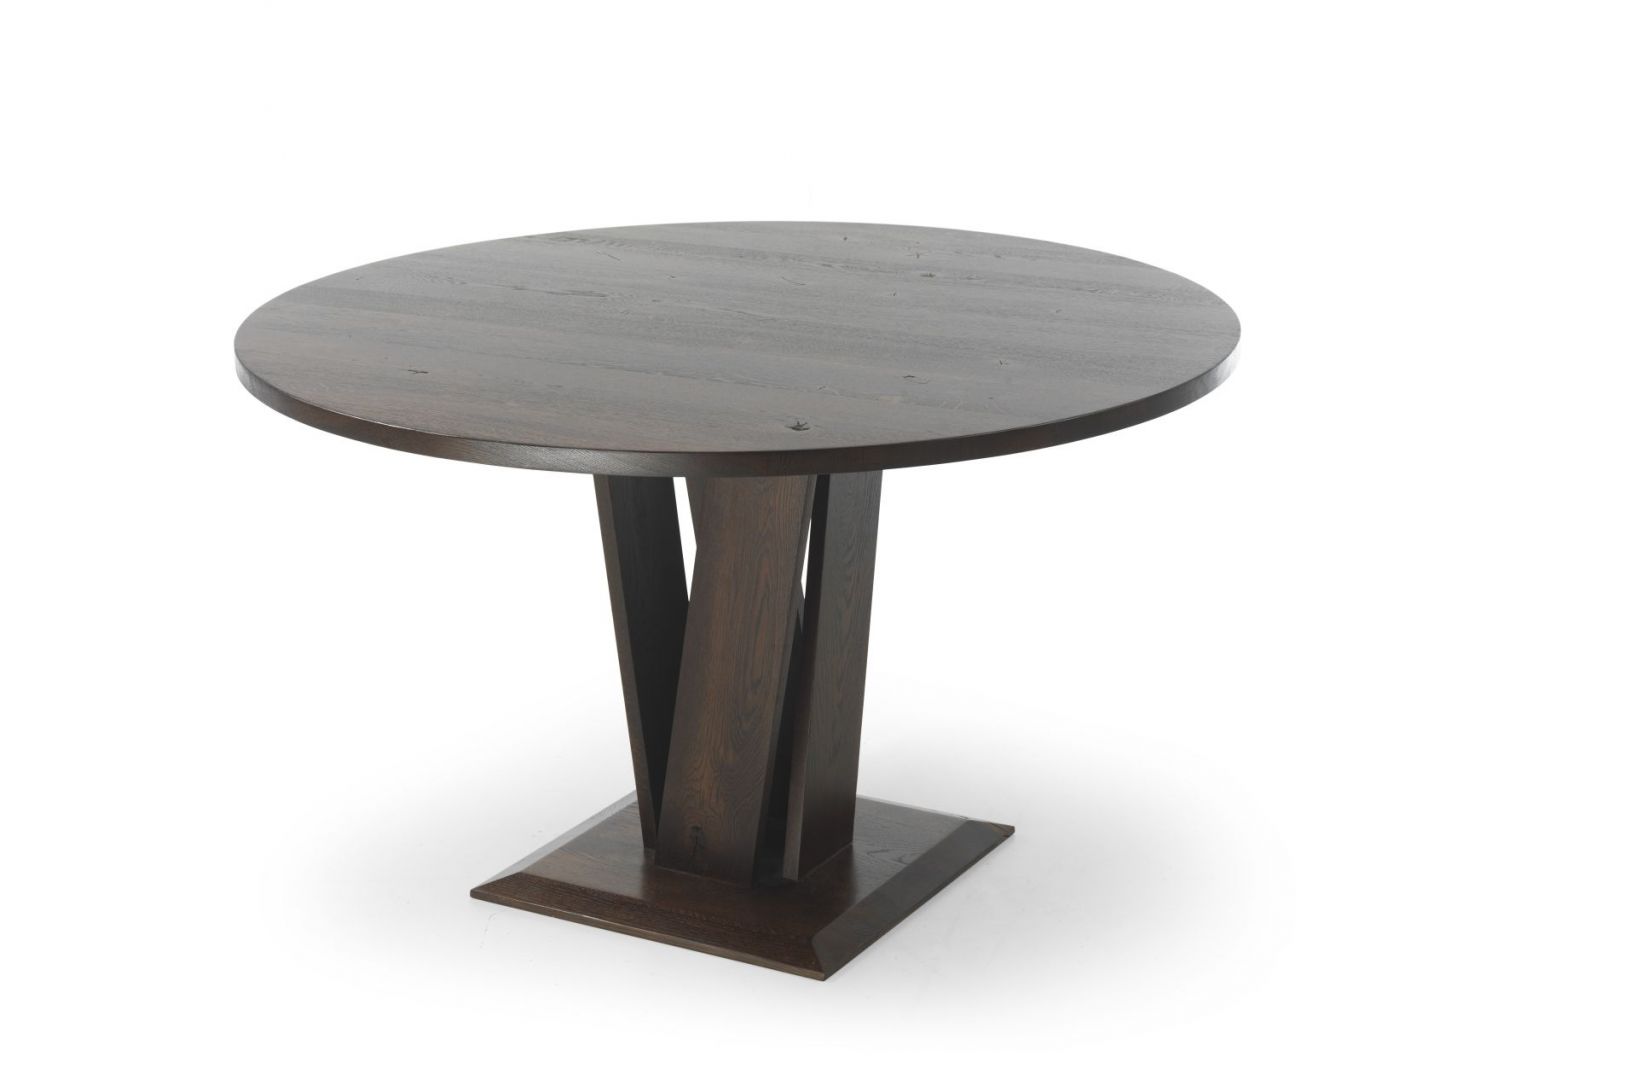 Okrągły stół Pulito, wykonany z drzewa dębowego, o orzechowym ubarwieniu. Blat stołu średniej grubości jest bardzo wygodny i praktyczny. Podstawa stołu w postaci kilku splecionych drewnianych desek, tworzy niepowtarzalny efekt. Fot. Congrazio